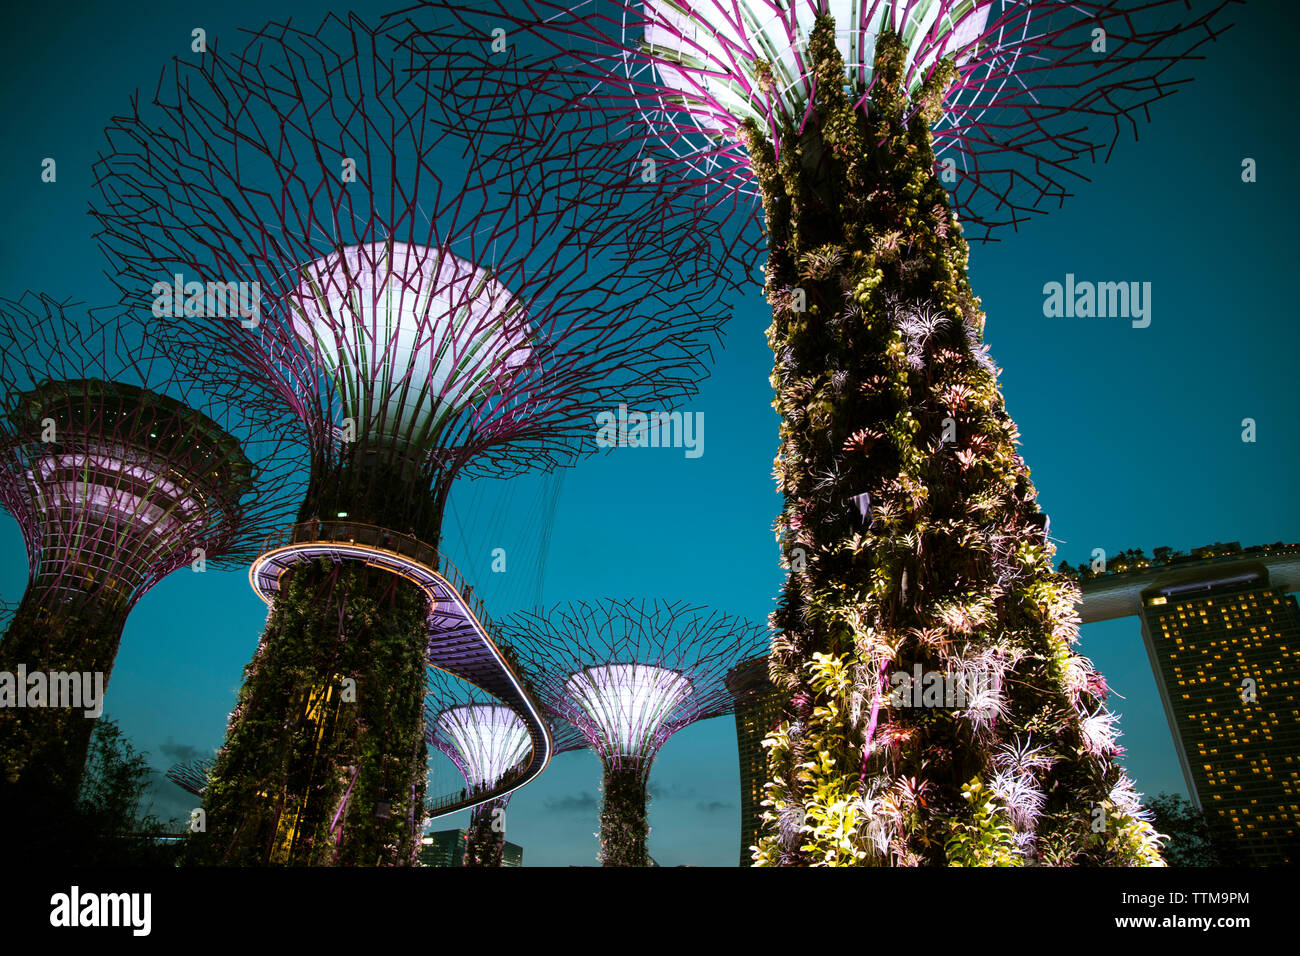 Singapour, les jardins de la baie, la Marina Bay Sands. Park illuminé de nuit super light show performance arbres courant pulsé Banque D'Images